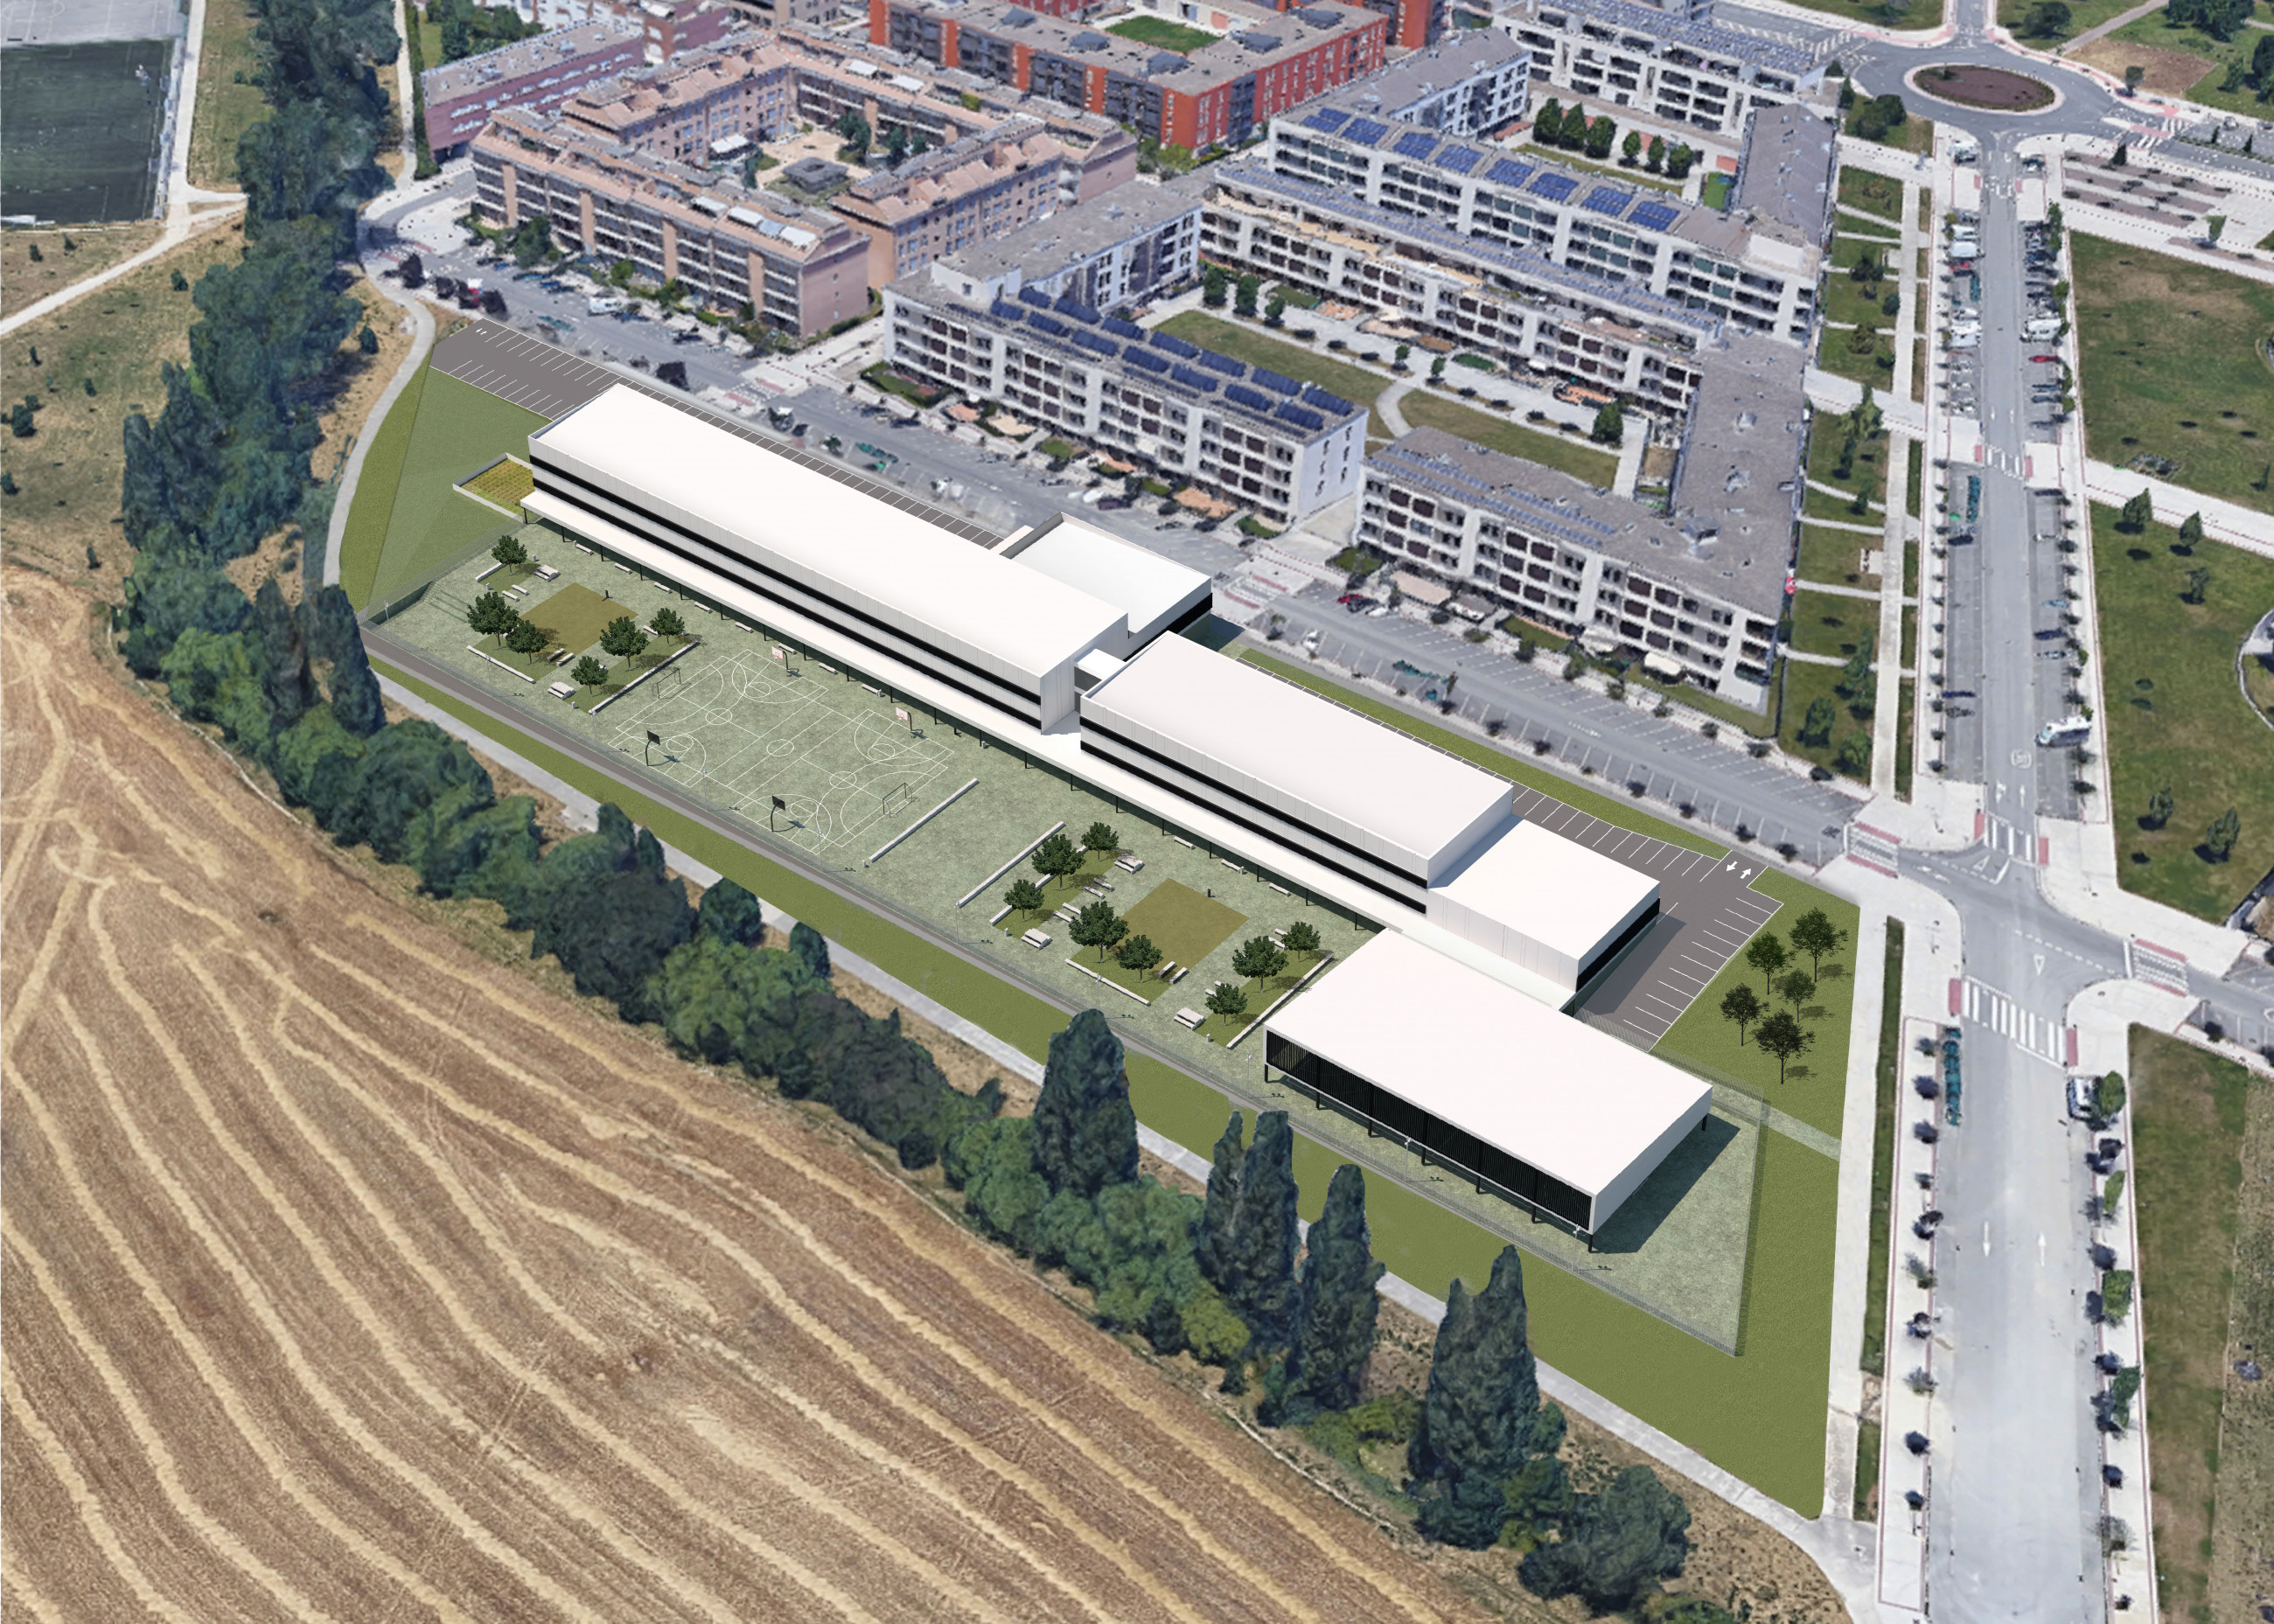 Proyecto de ampliación del instituto de educación secundaria en Sarriguren, Valle de Egües (Navarra)